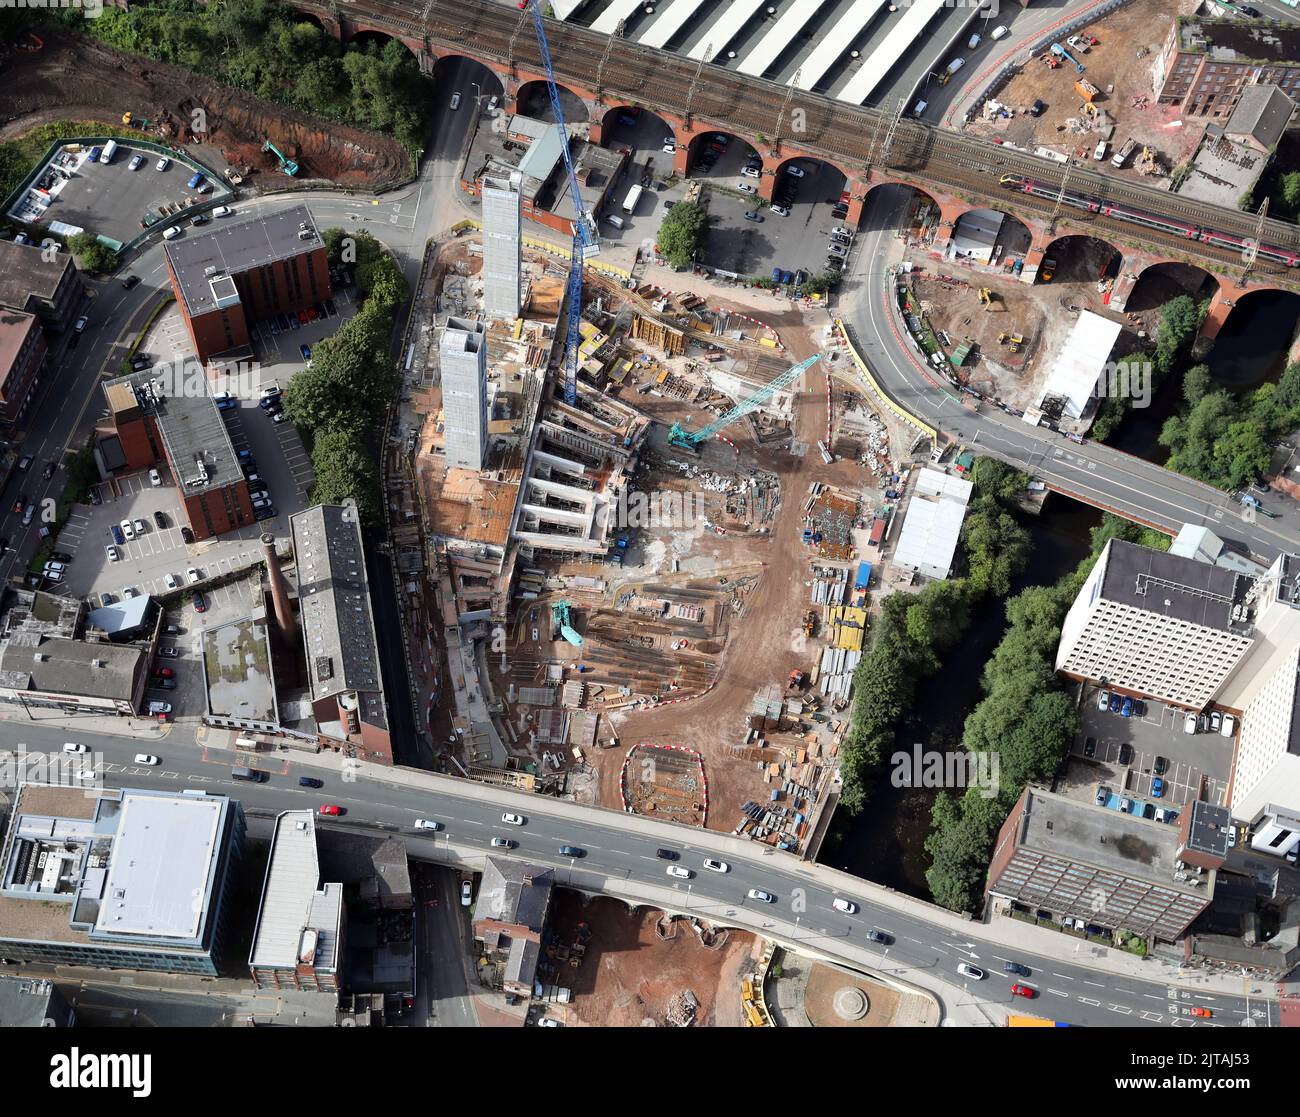 Vista aérea del nuevo desarrollo de Stockport Interchange Park saliendo del suelo en el centro de la ciudad de Stockport en Daw Bank y Viaduct Street Foto de stock